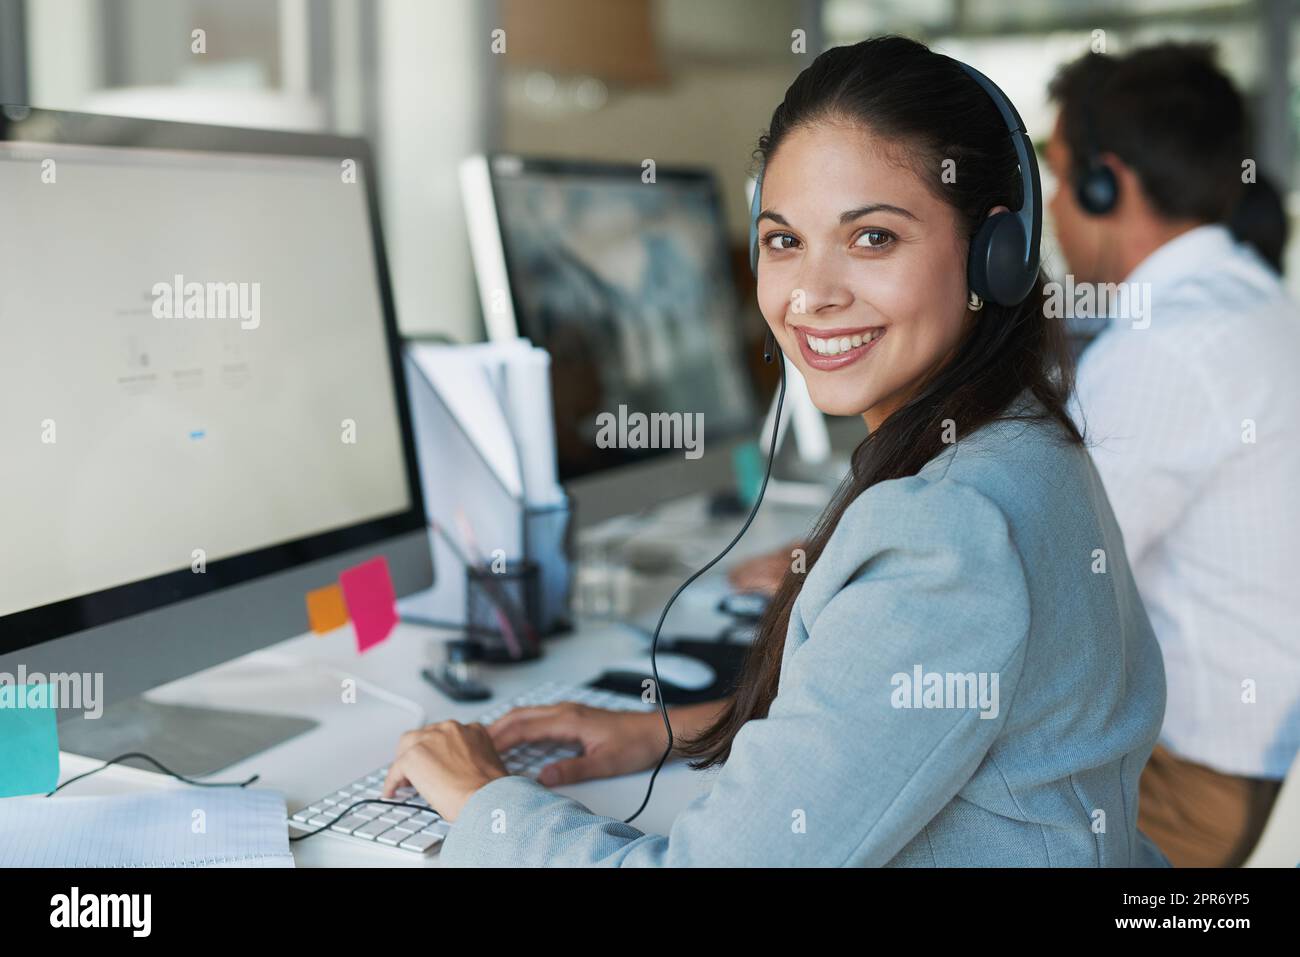 Il servizio di assistenza clienti di qualità è inestimabile. Ritratto di una giovane donna felice e fiduciosa che lavora in un call center. Foto Stock